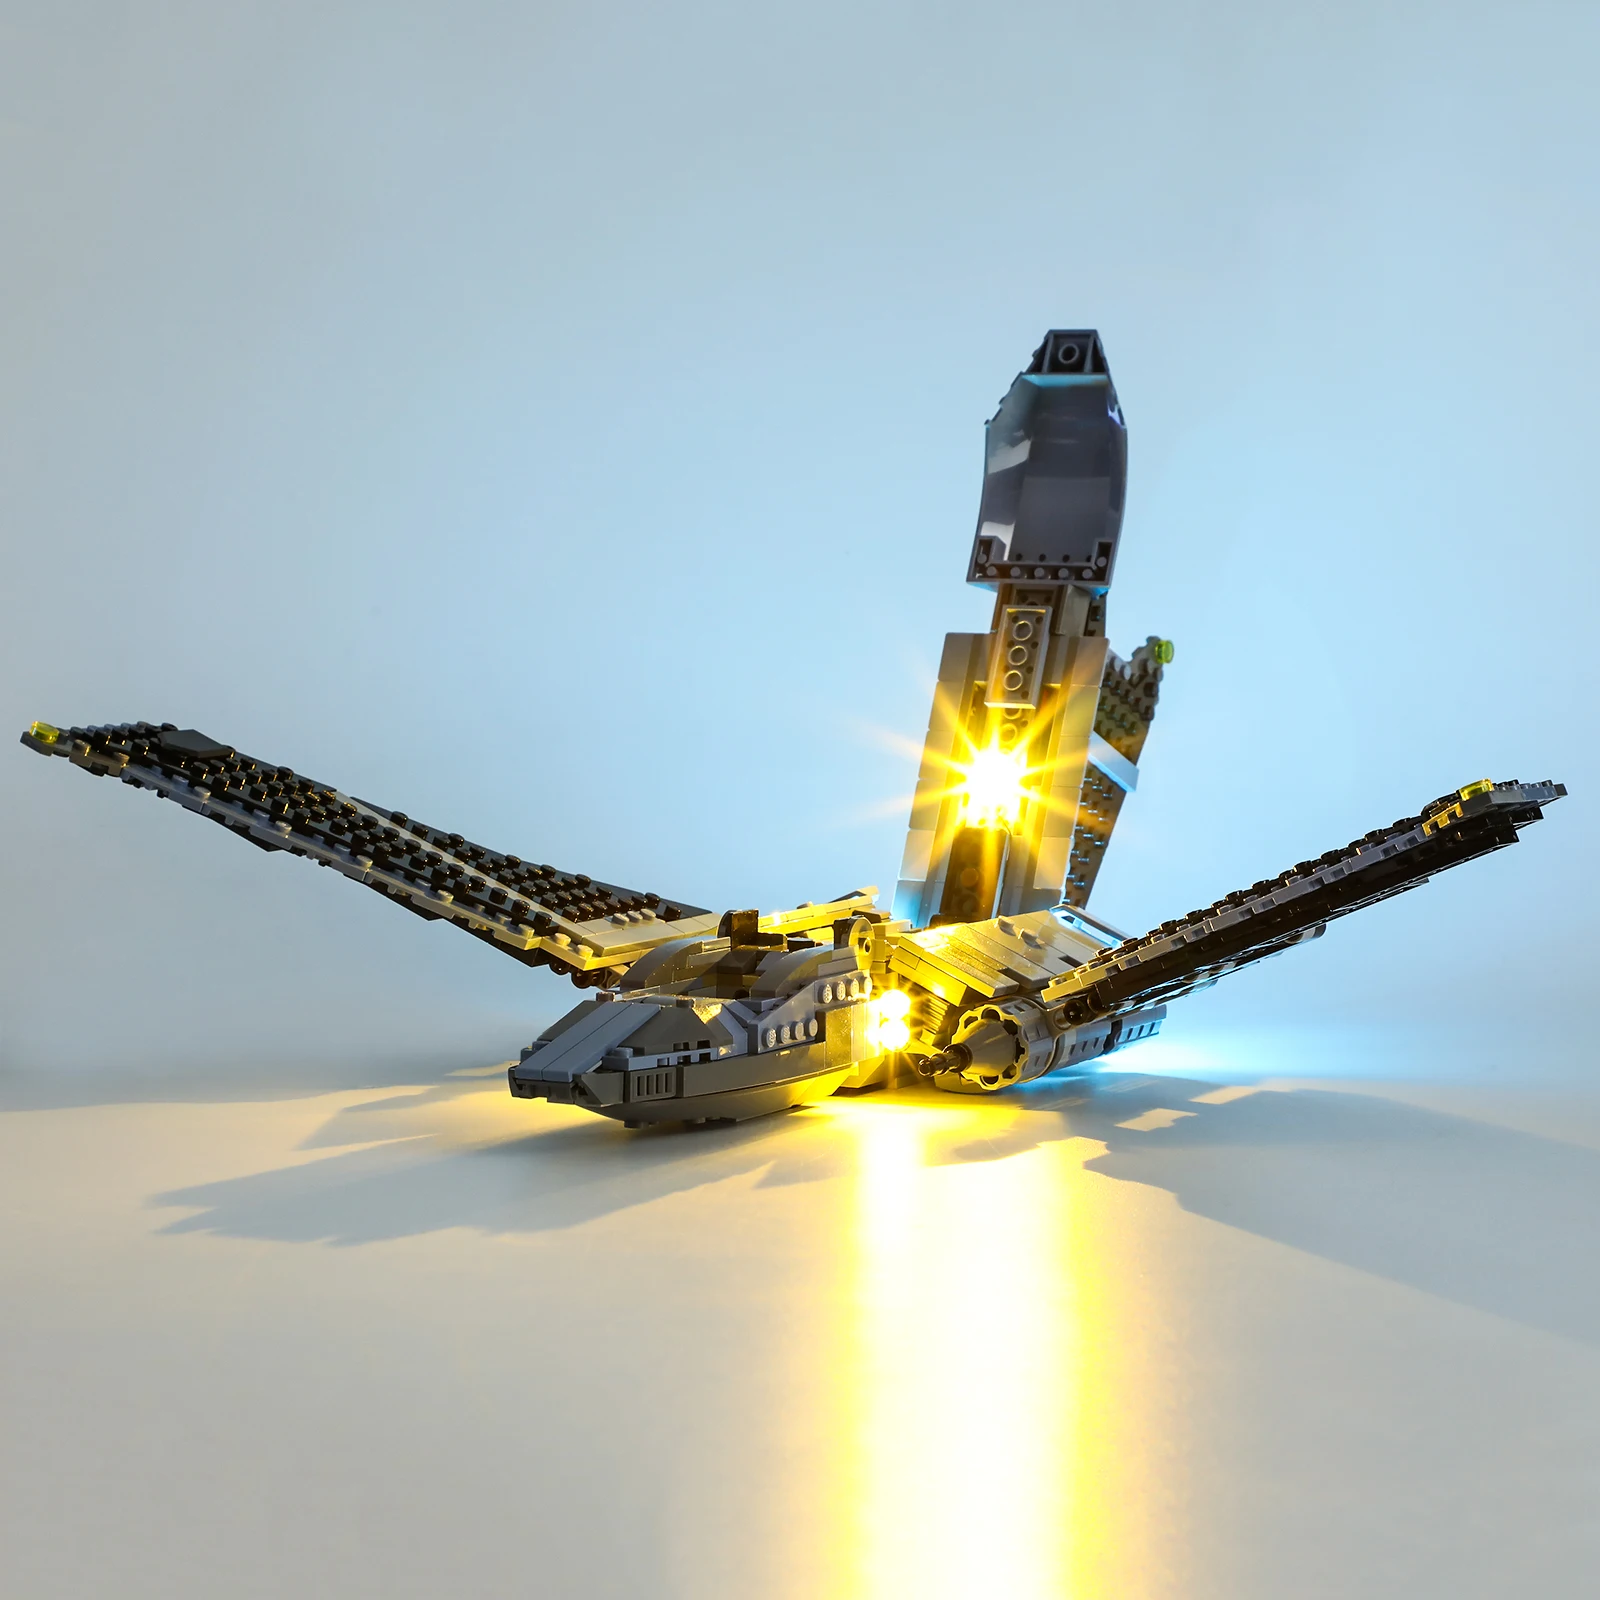 

Lightaling Led Light Kit for 75314 Bad Batch Attack Shuttle